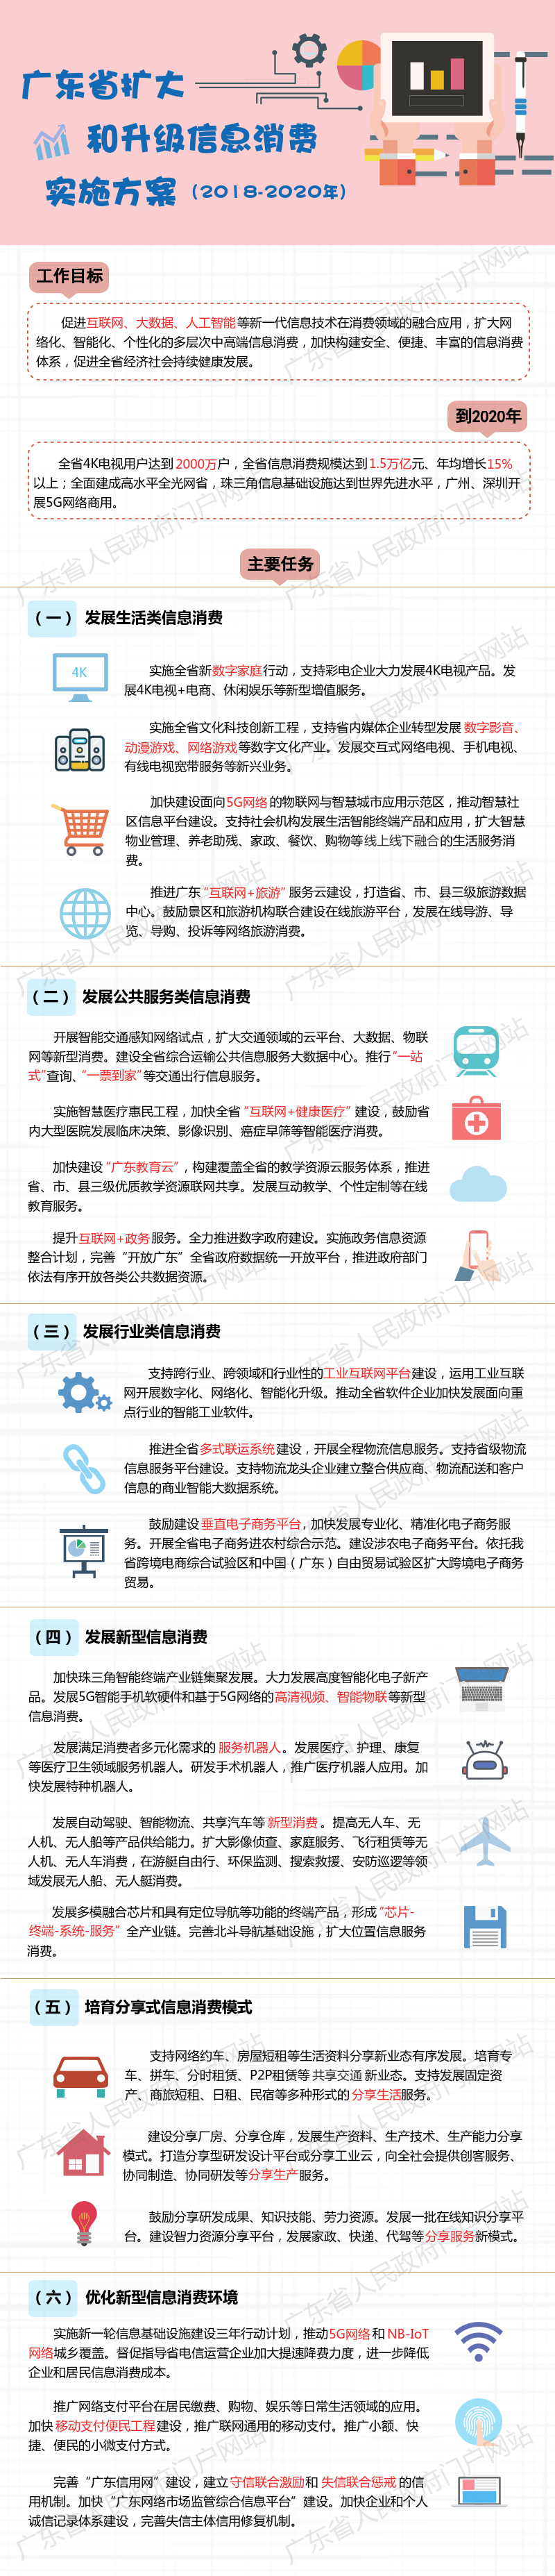 文件 | 广东省扩大和升级信息消费实施方案（2018-2020年）（图解+全文）.png